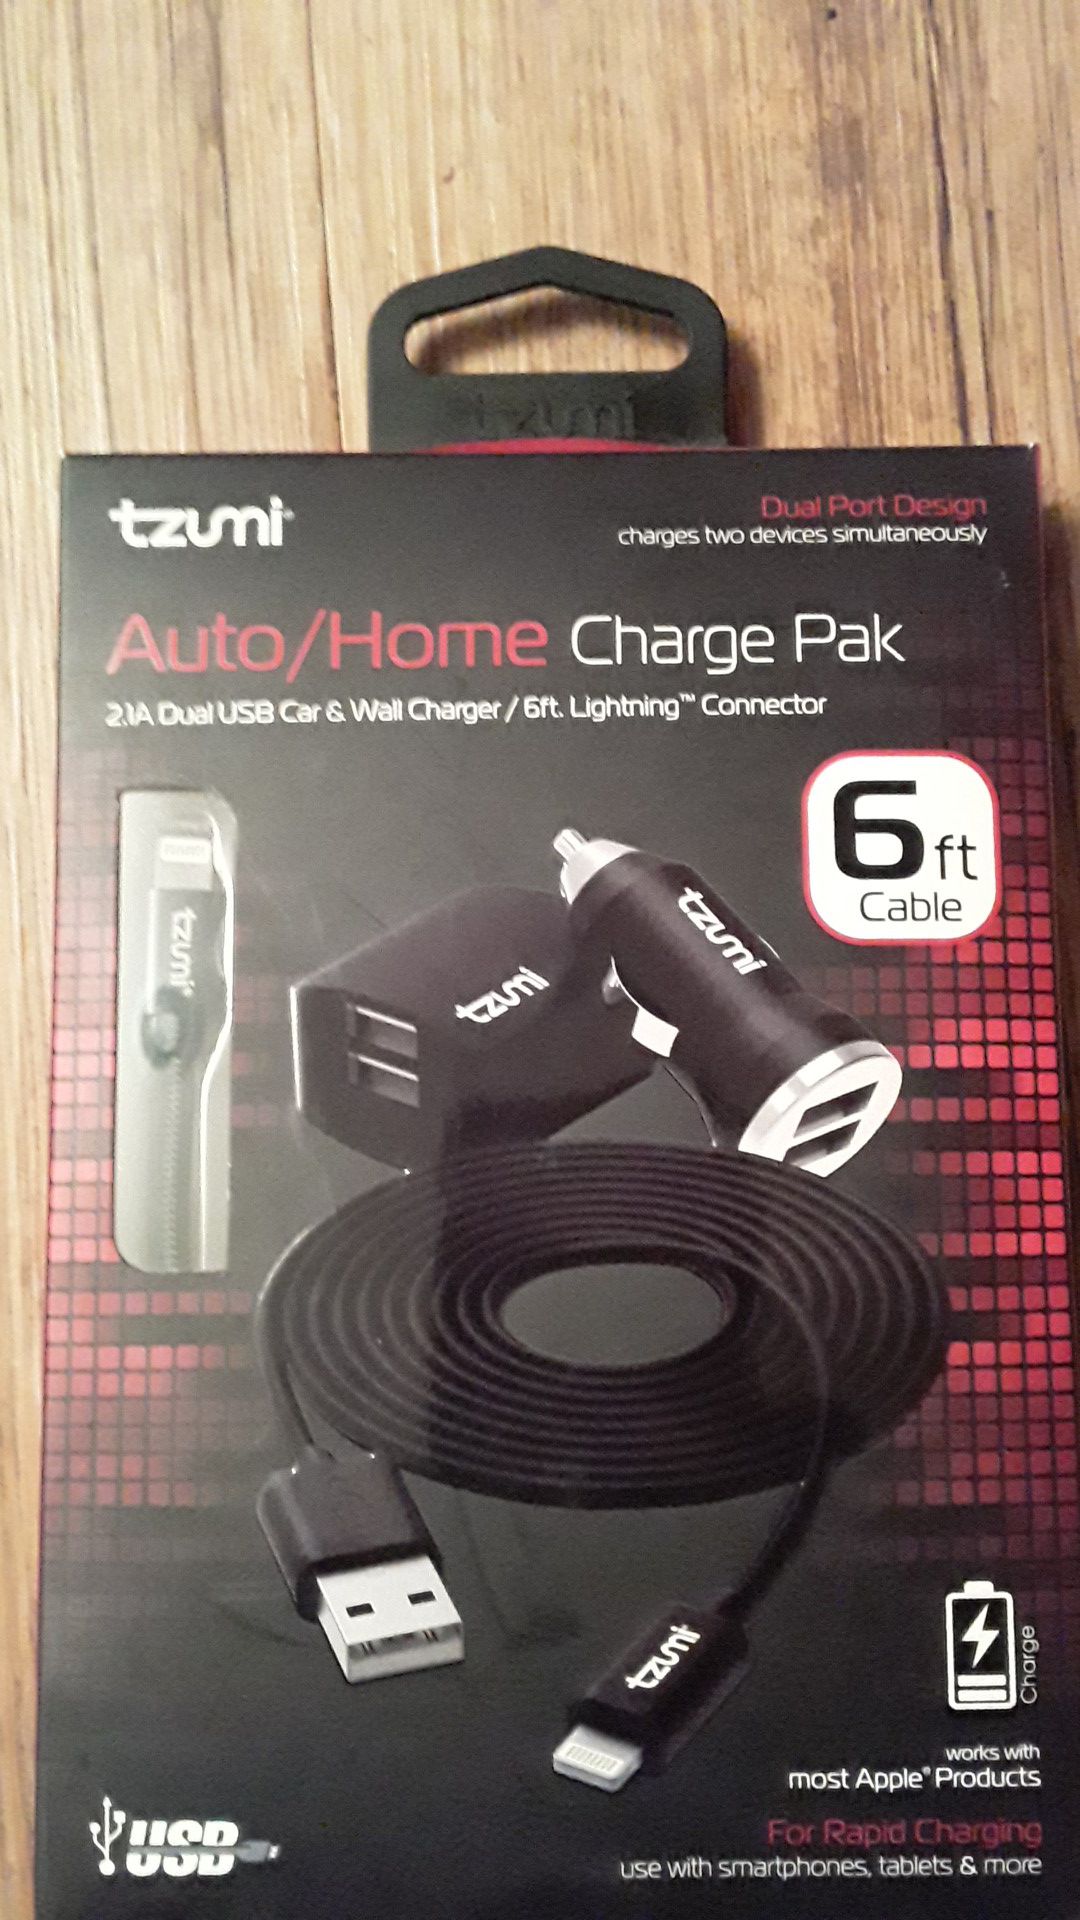 Tzumi auto/home charge pak